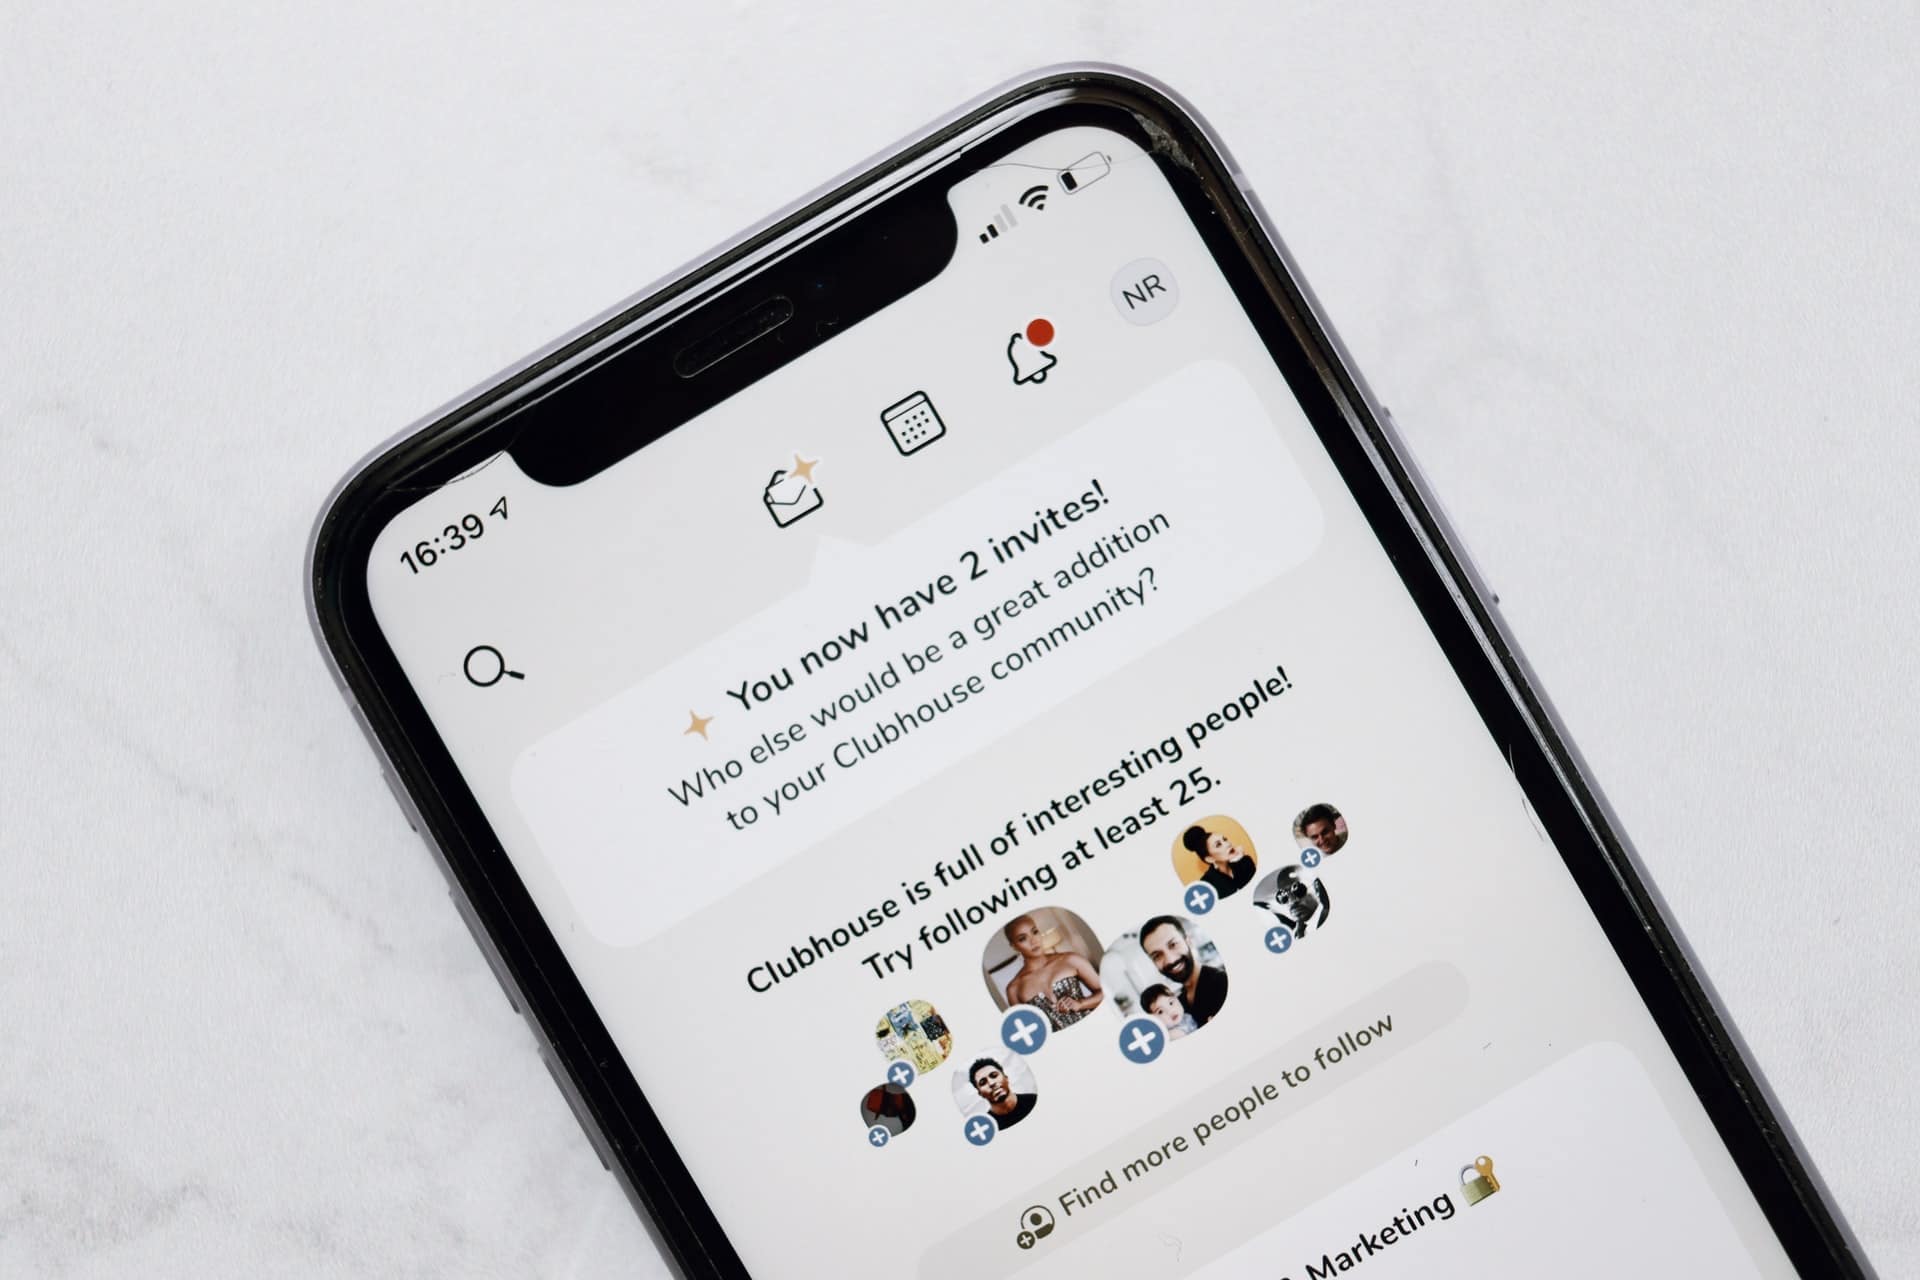 foto van een iphone met de app Clubhouse erop, waarin te zien is dat iemand nog twee invites kan versturen